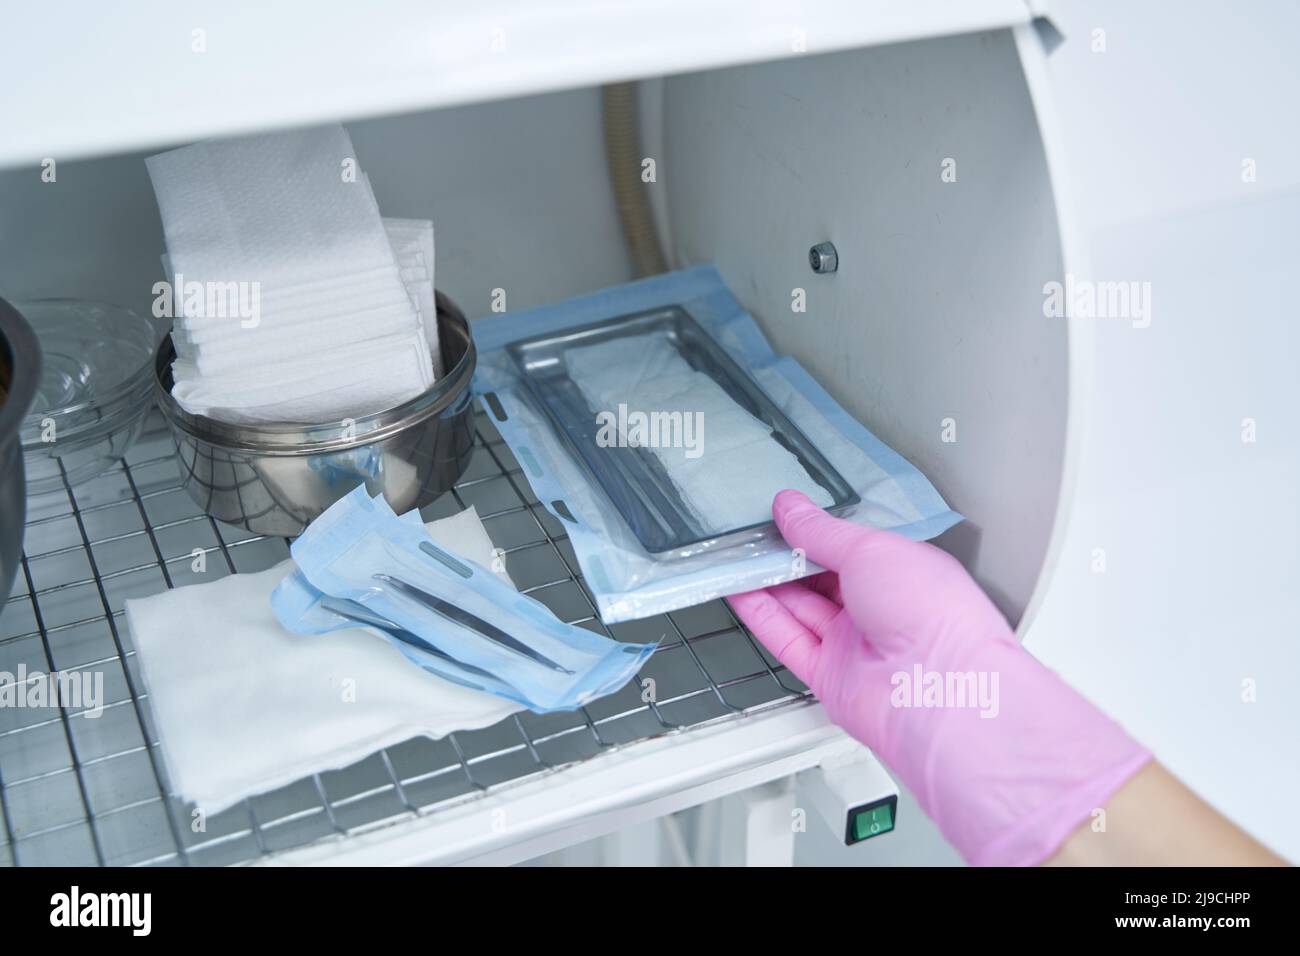 Operatore medico che prende gli strumenti dopo la sterilizzazione Foto Stock